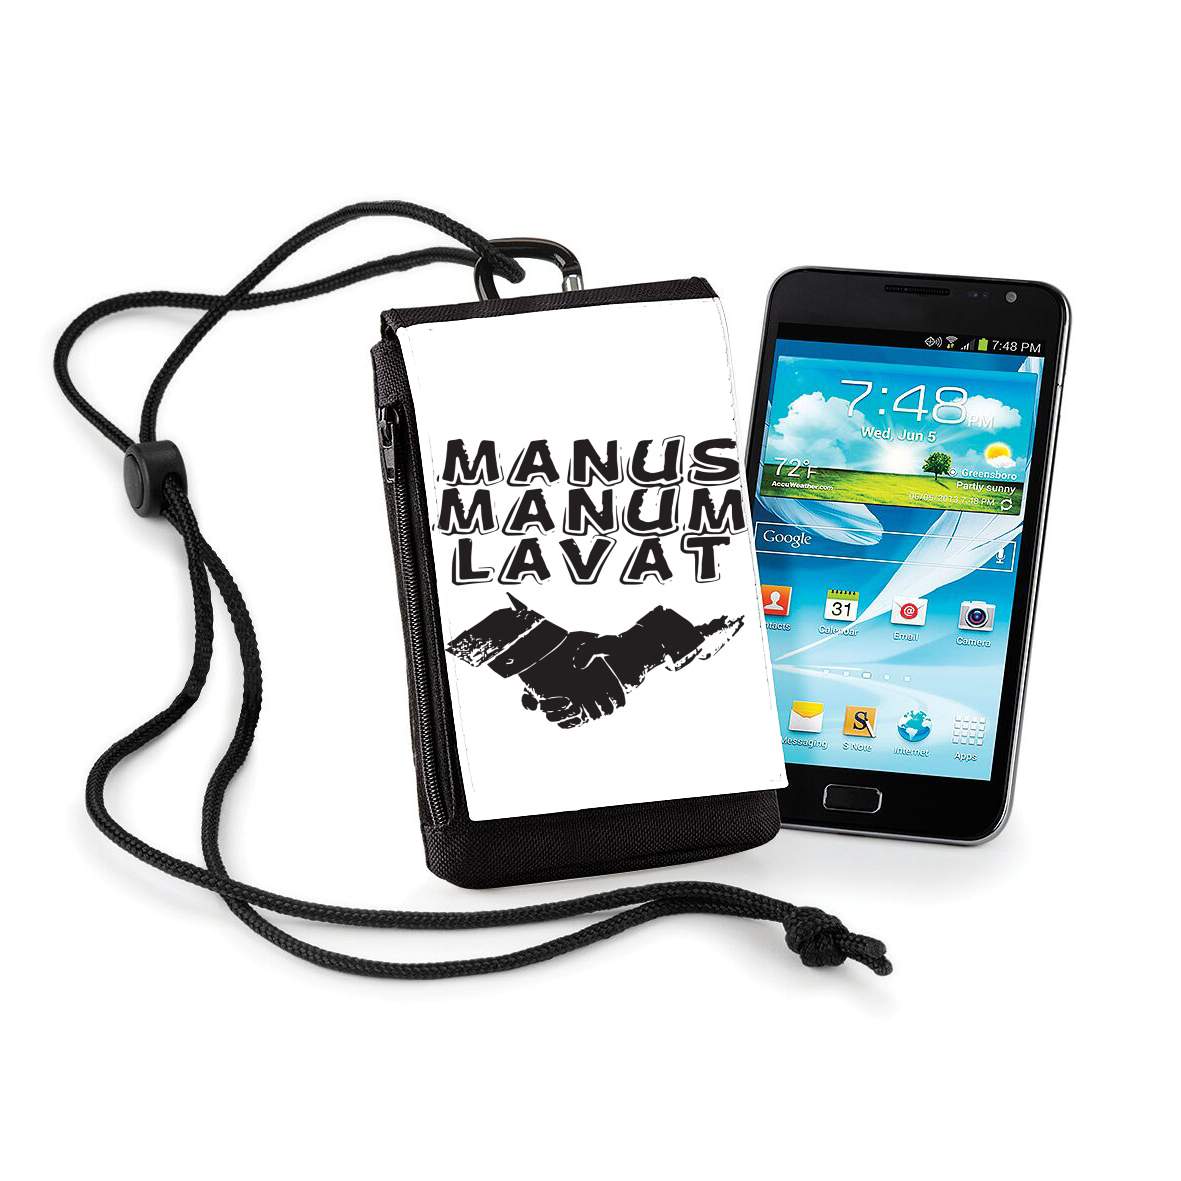 Pochette de téléphone - Taille XL pour Manus manum lavat